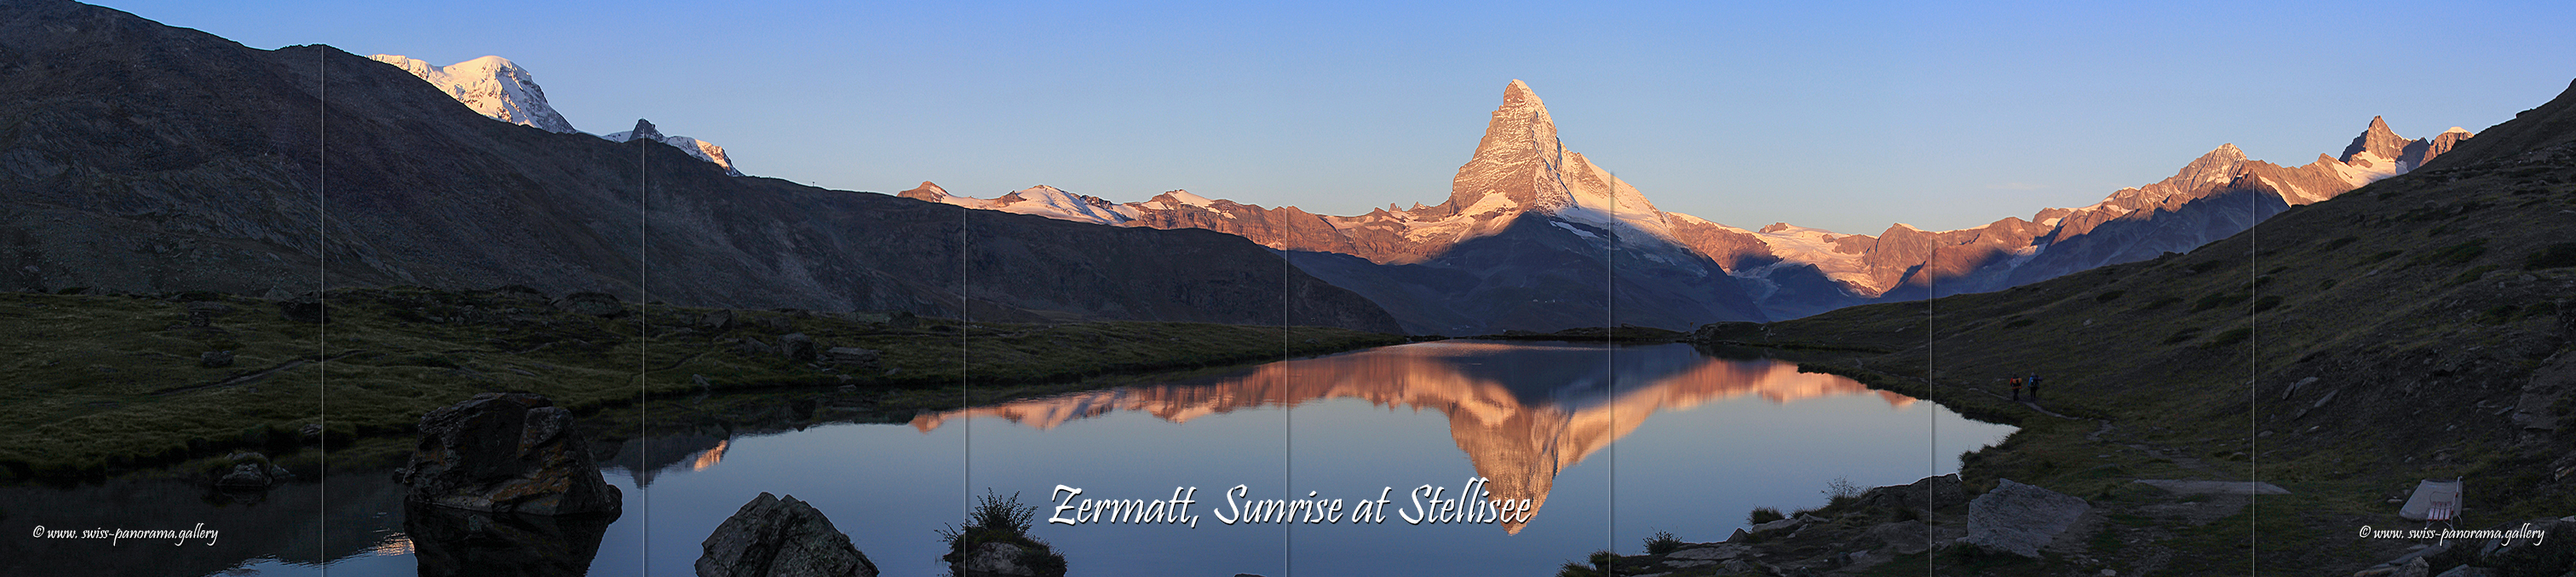 Swiss Panorama Zermatt